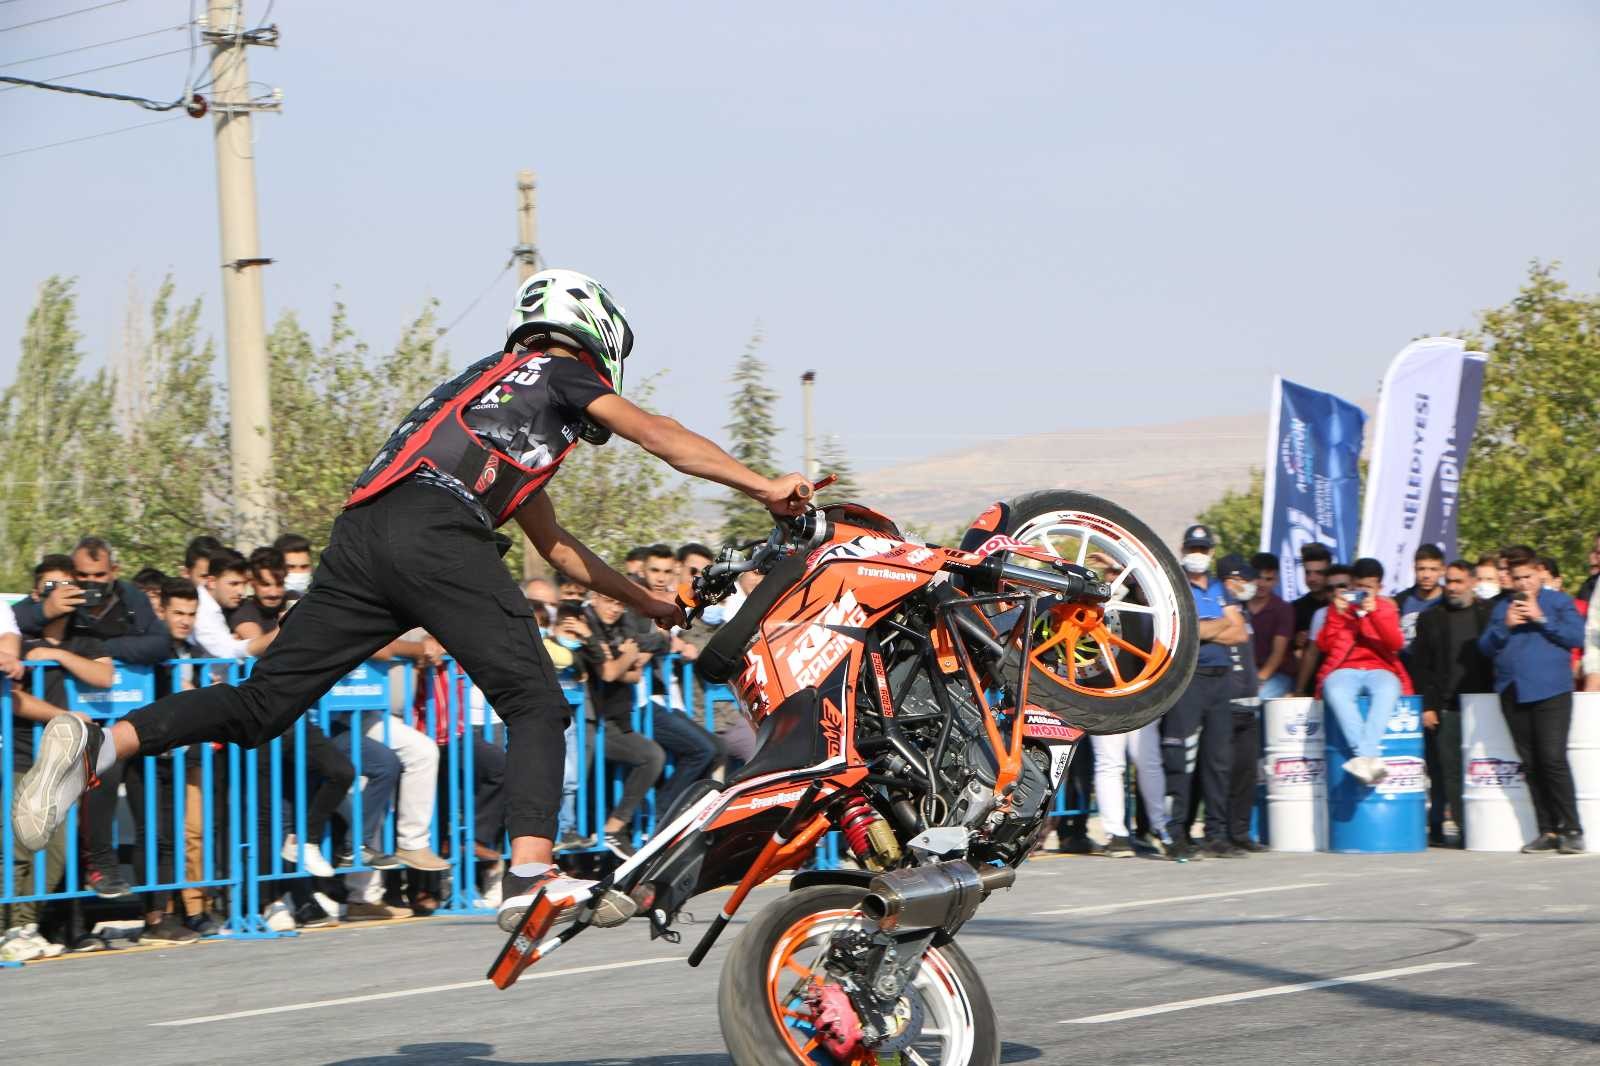 Elazığ’da ’Modifiyeli Araç ve Motosiklet Festivali’ renkli görüntülere sahne oldu #elazig